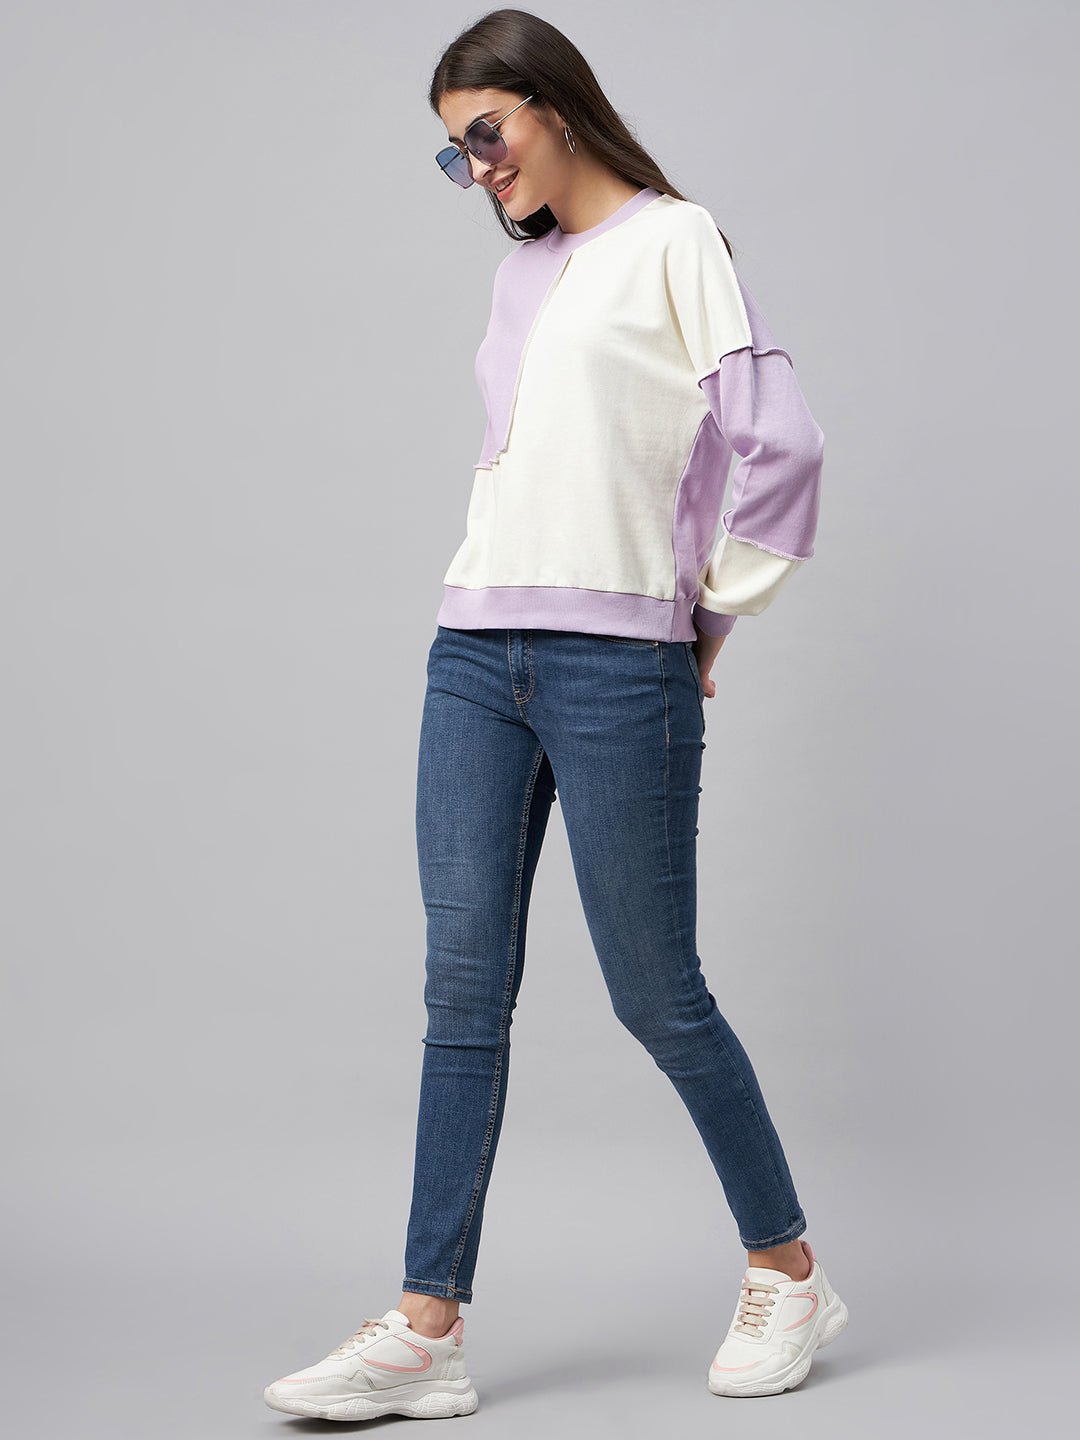 Lavender Colorblocked Sweatshirt - clubyork